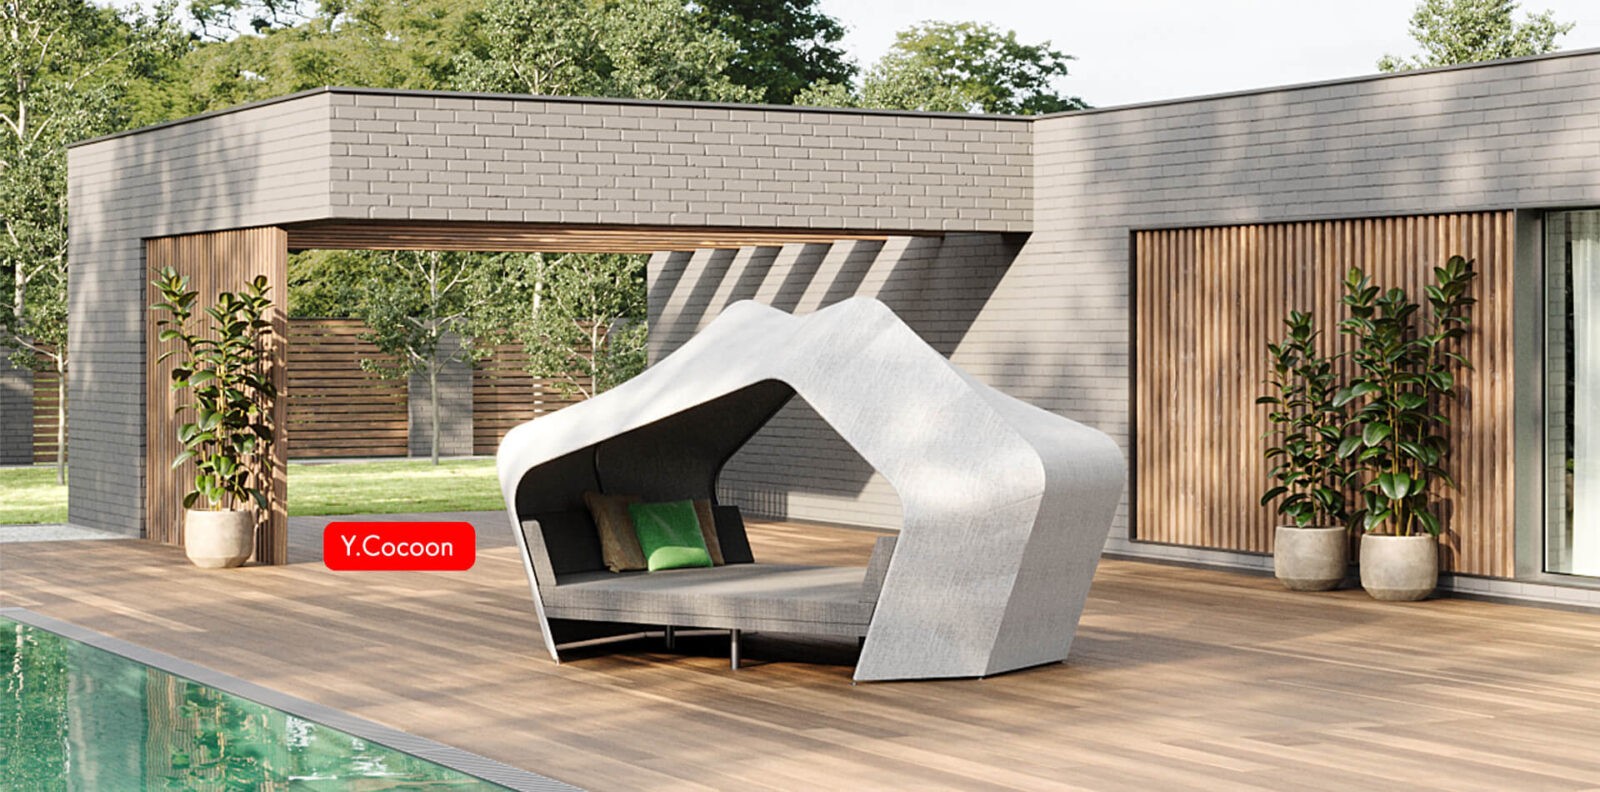 Y.Cocoon | Outdoor furniture | Garden furniture | Modern Design